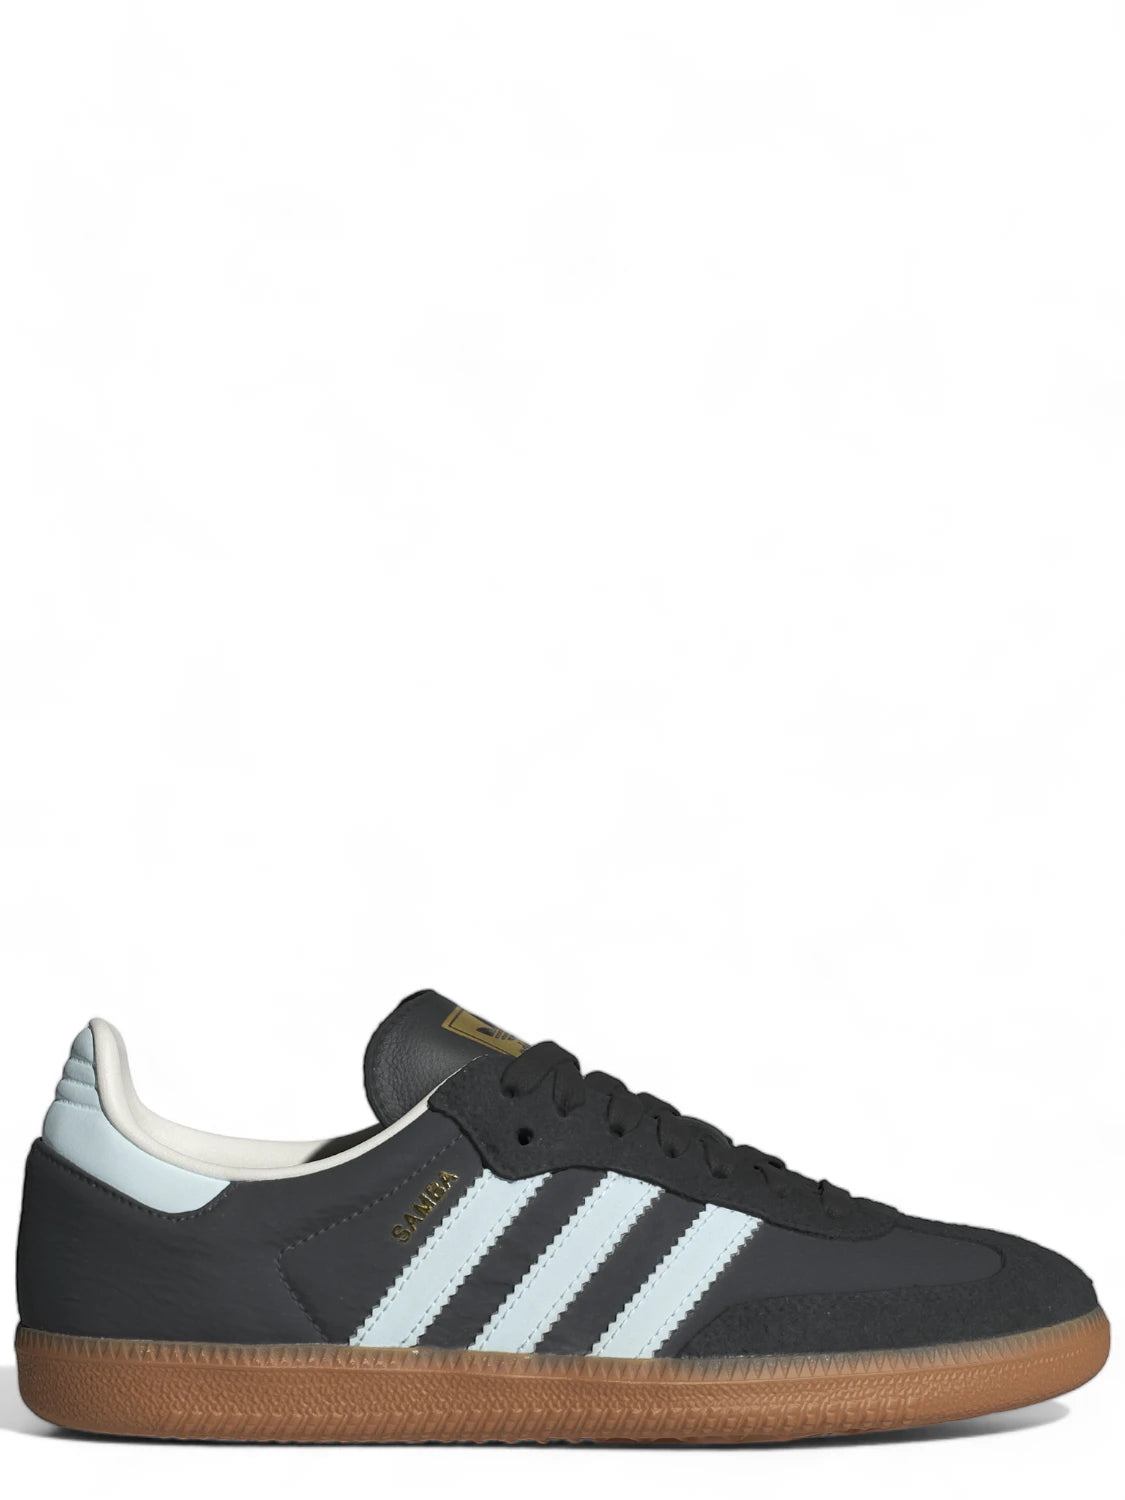 Adidas Samba OG W Grigio-Sneakers-Adidas Originals-Vittorio Citro Boutique